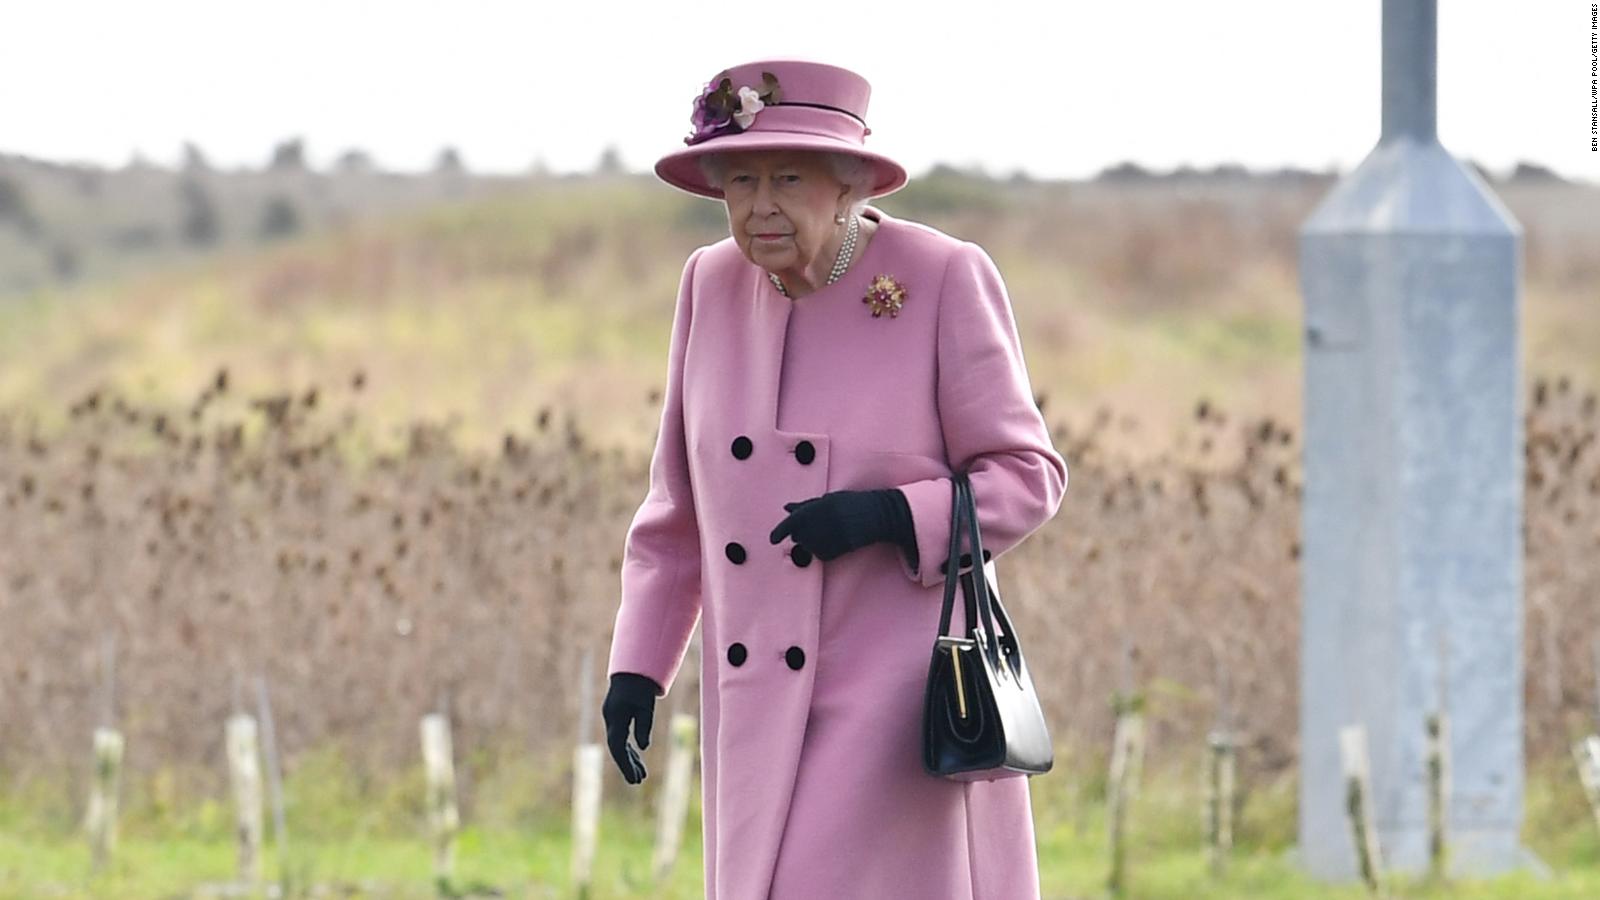 La reina Isabel II se muestra sin mascarilla en público pese a sus 94 años | Video | CNN